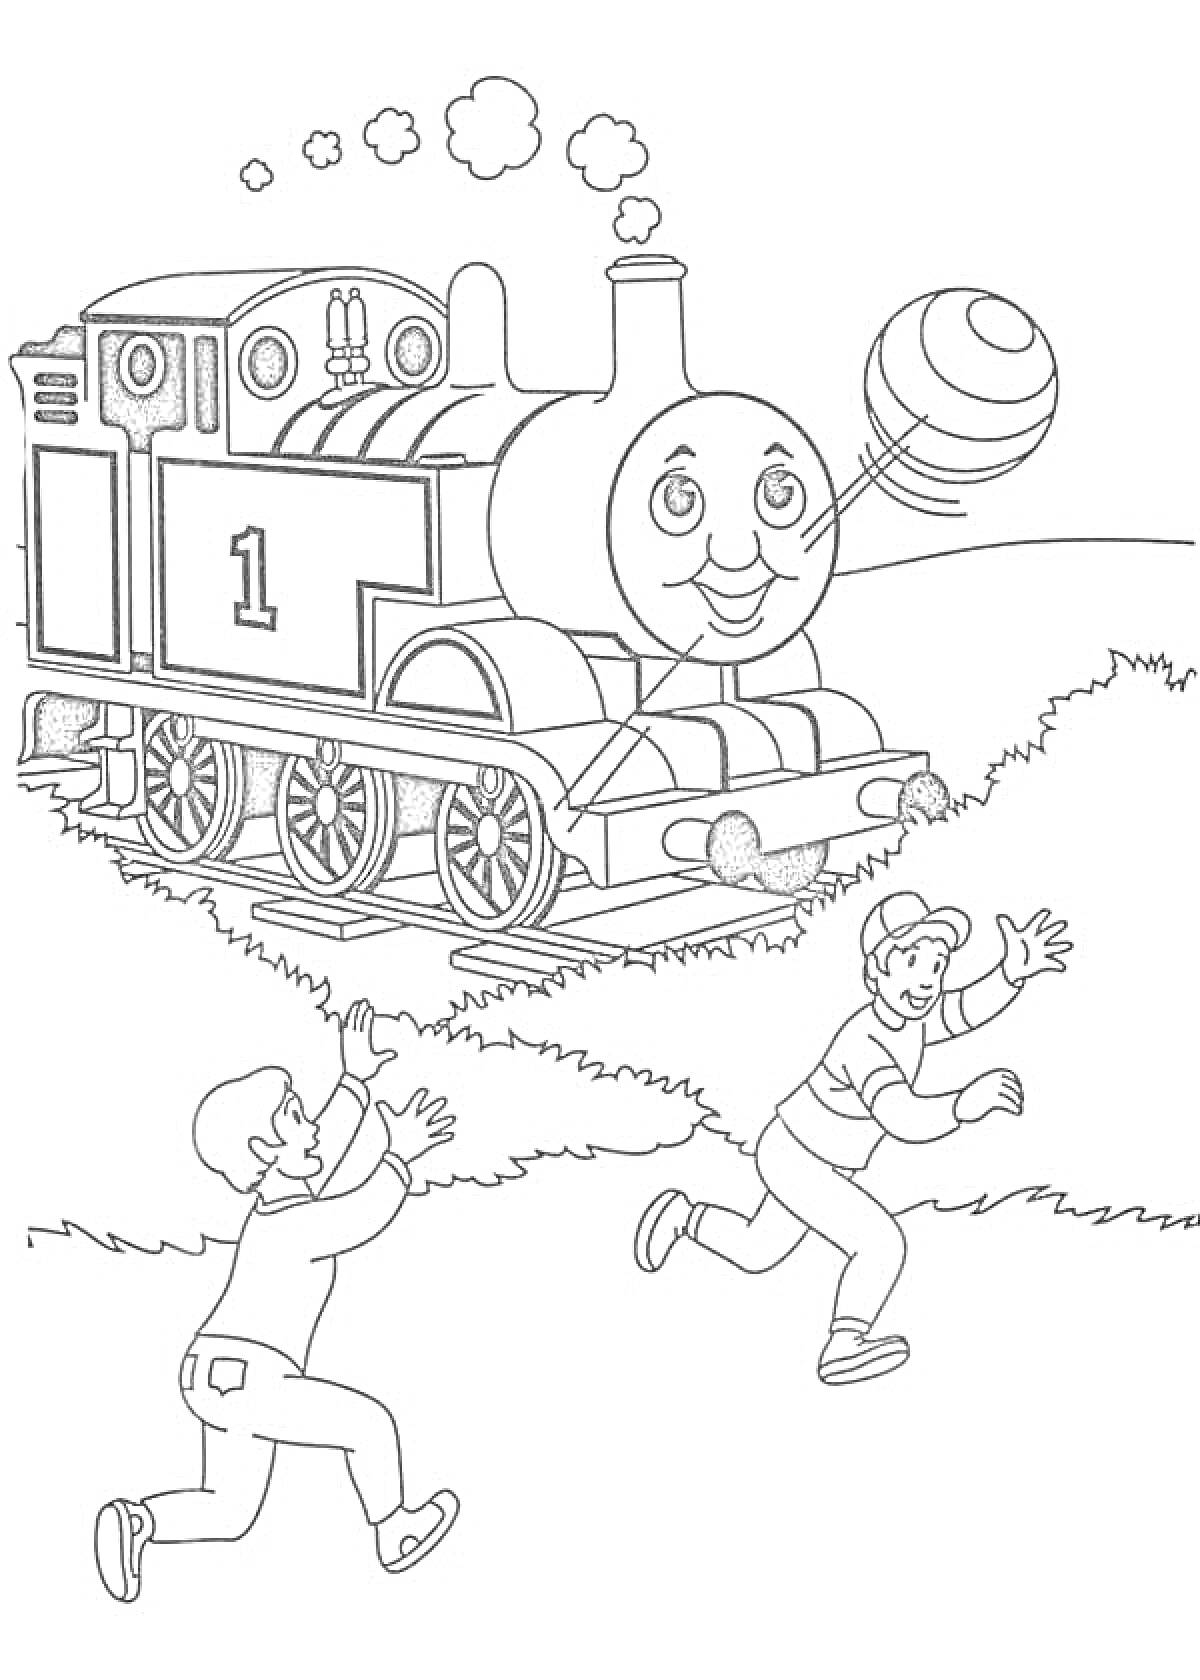 Раскраска Паровозик Томас с воздушным шаром, дети бегут за шаром